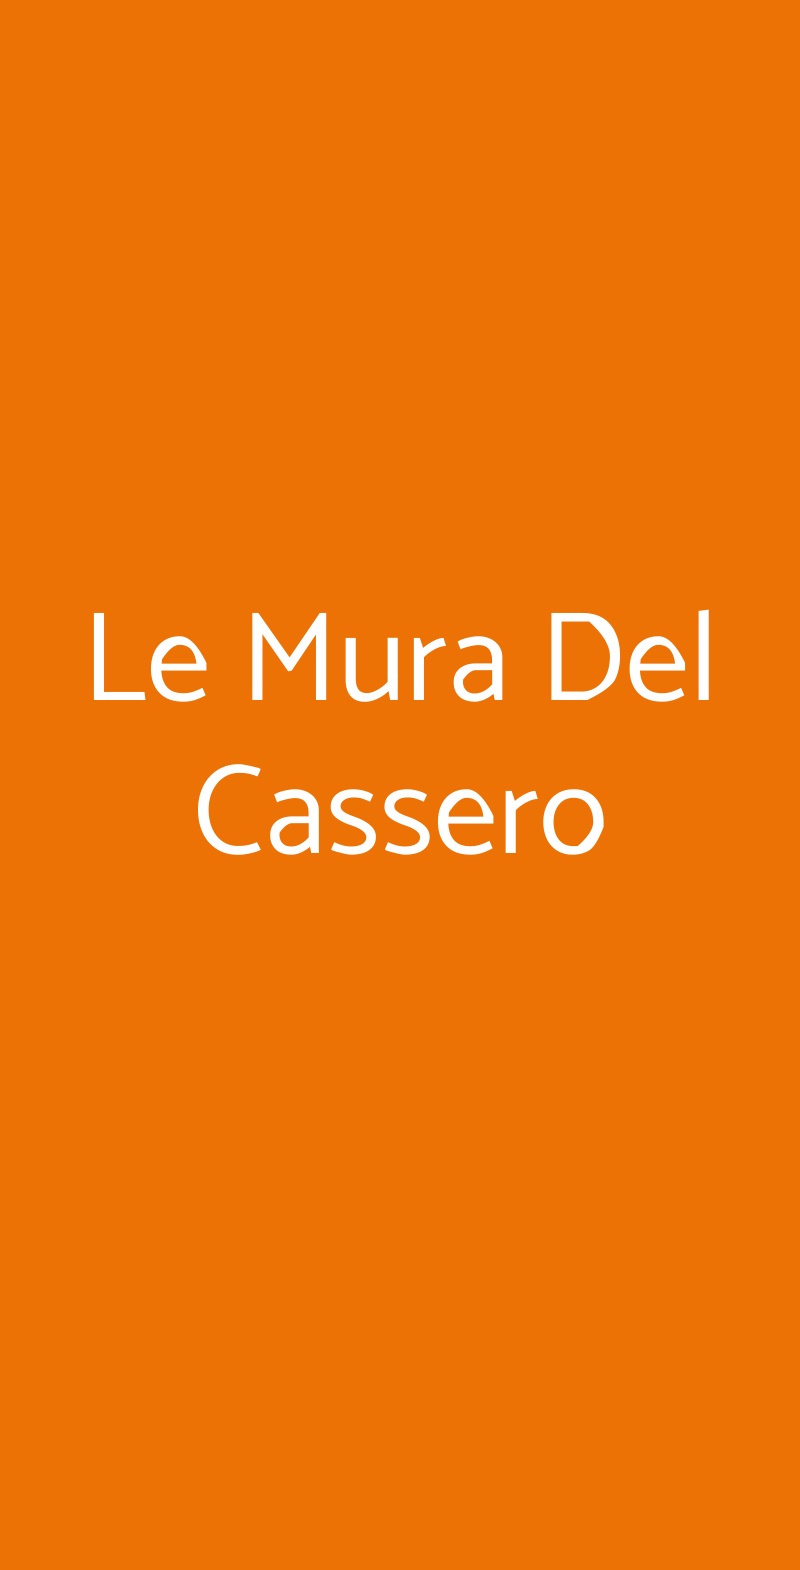 Le Mura Del Cassero Montevarchi menù 1 pagina